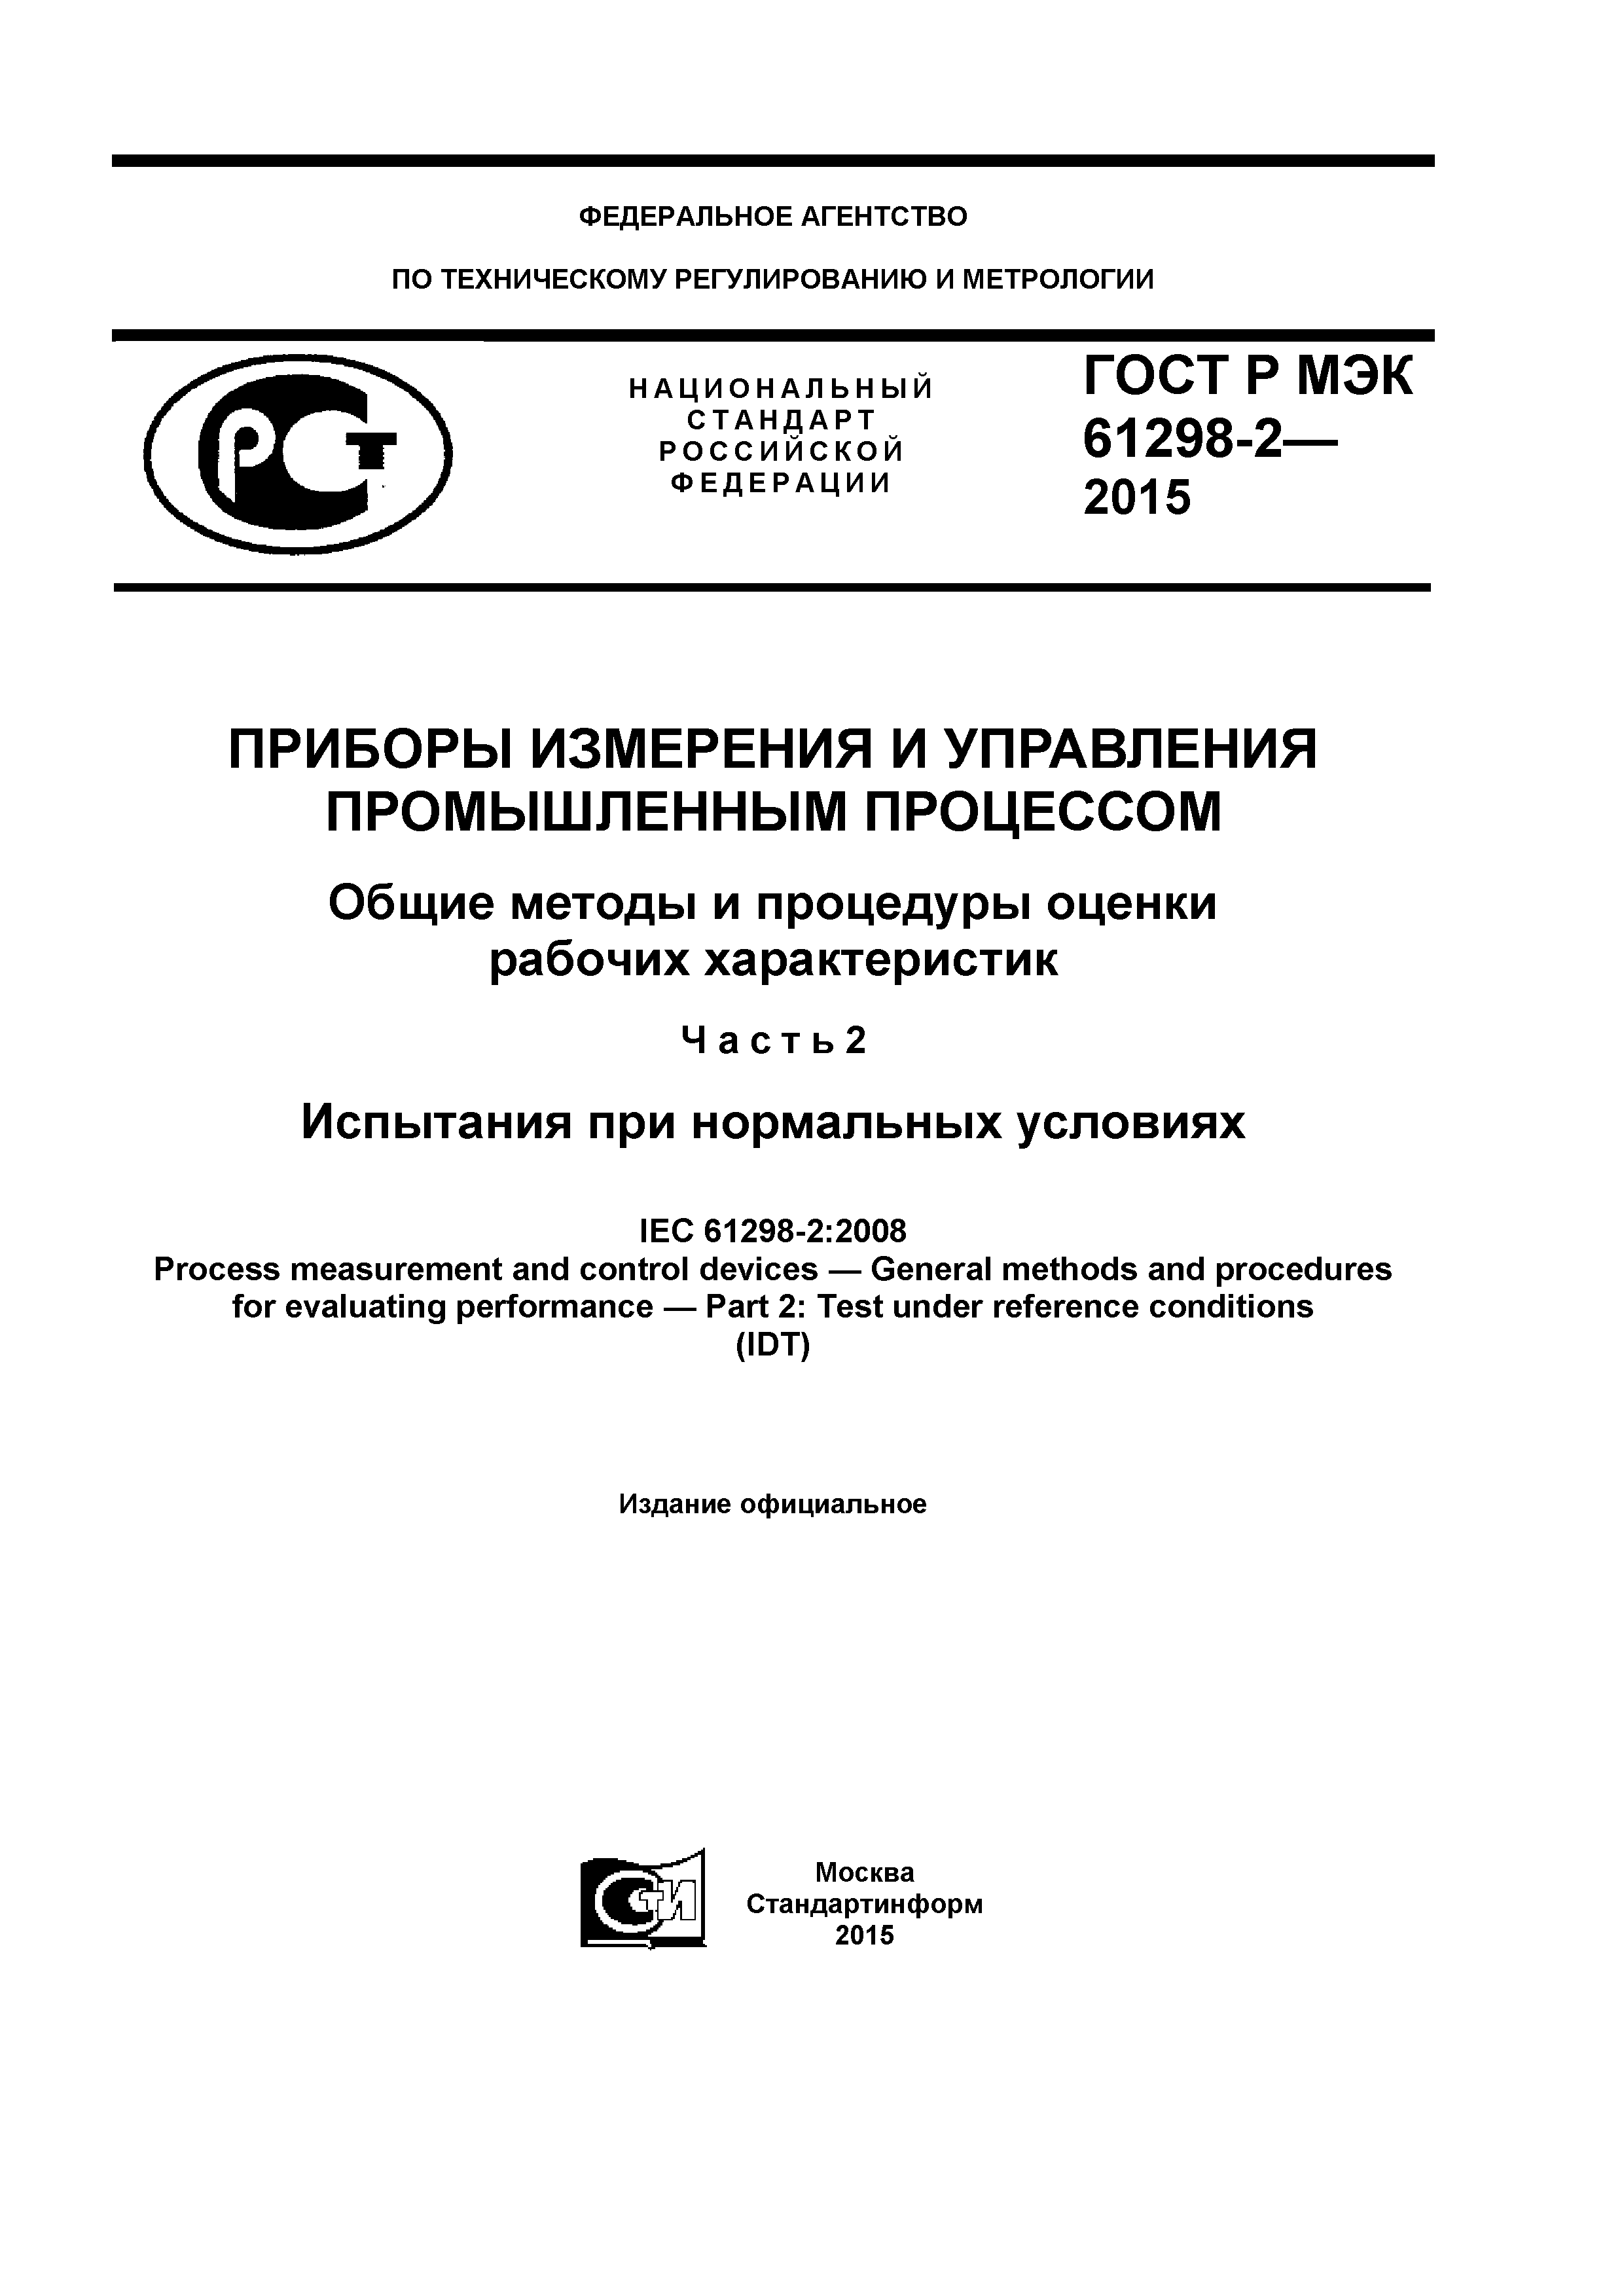 ГОСТ Р МЭК 61298-2-2015